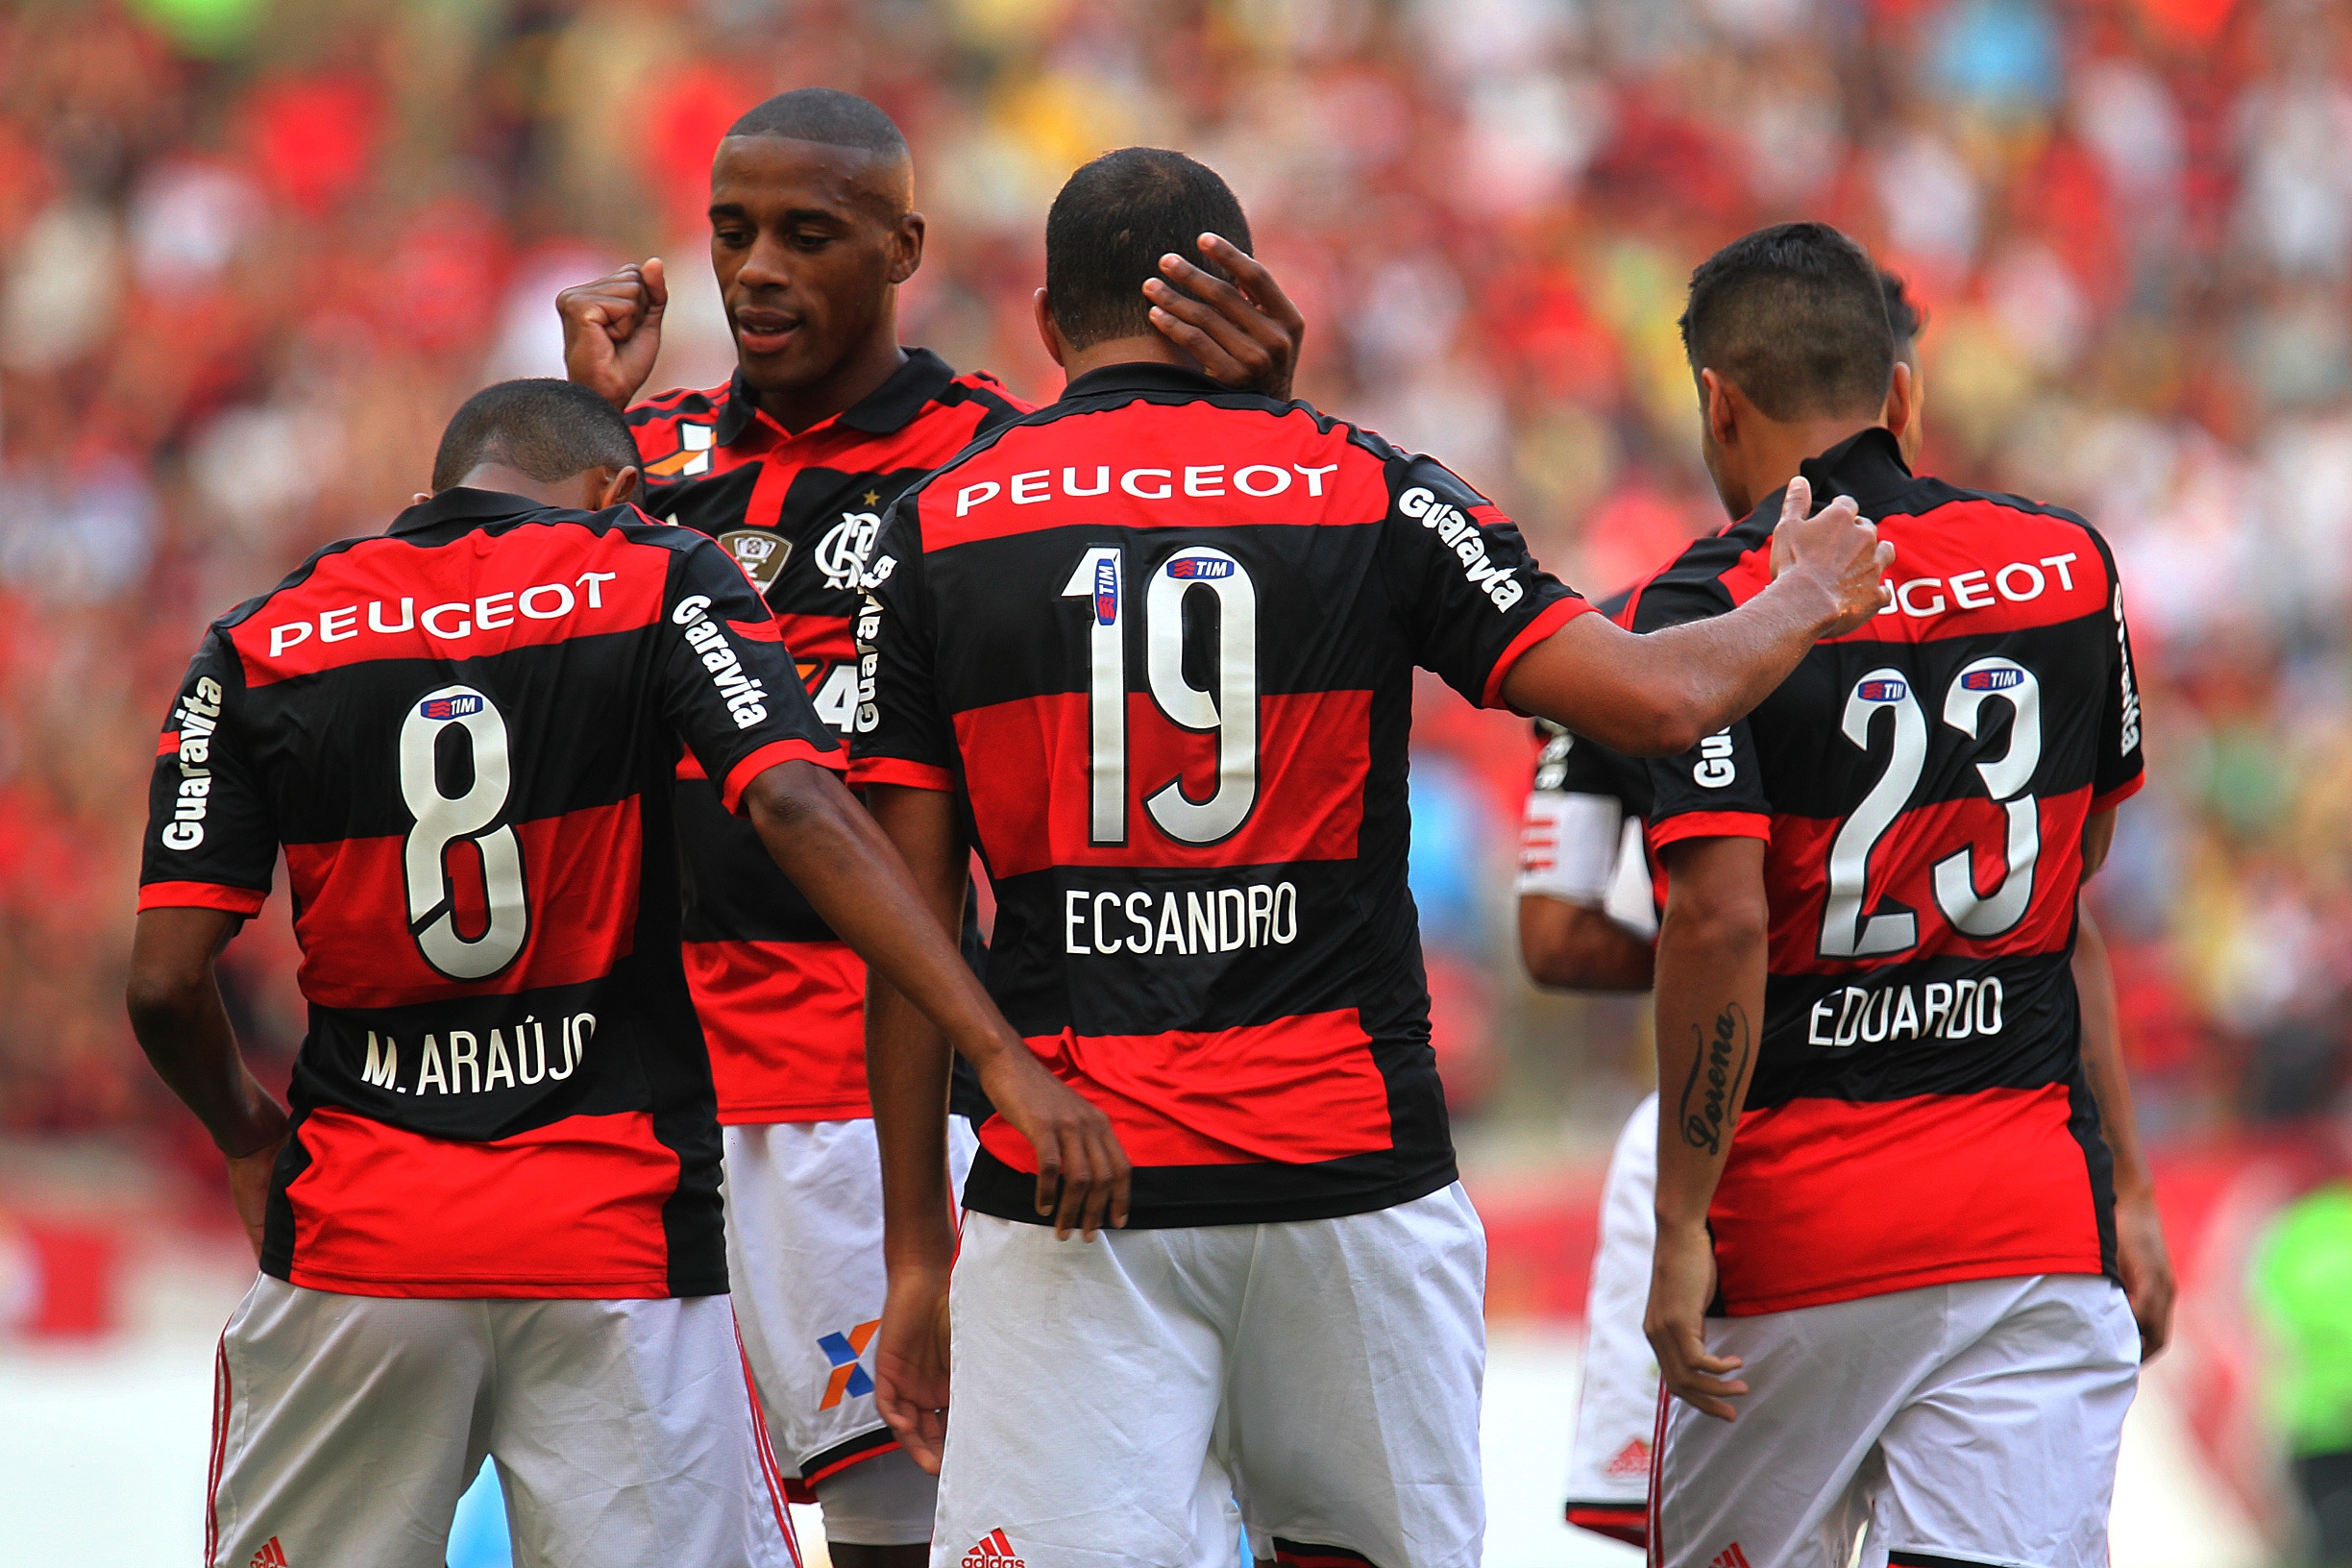 Wins for Botafogo and Flamengo in Brasileirão